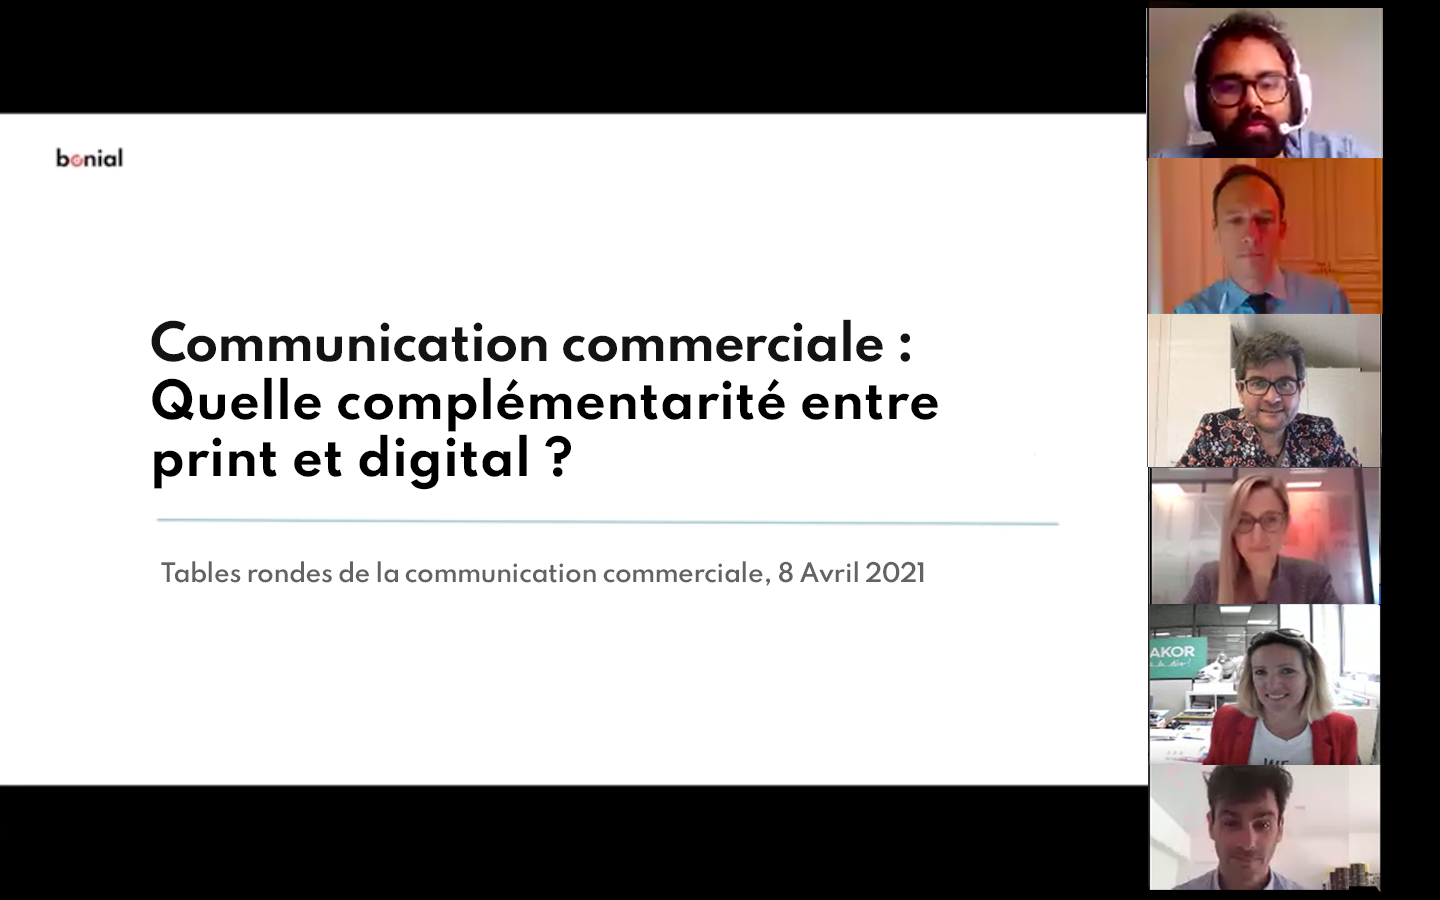 Communication commerciale : quelle complémentarité entre print et digital ?